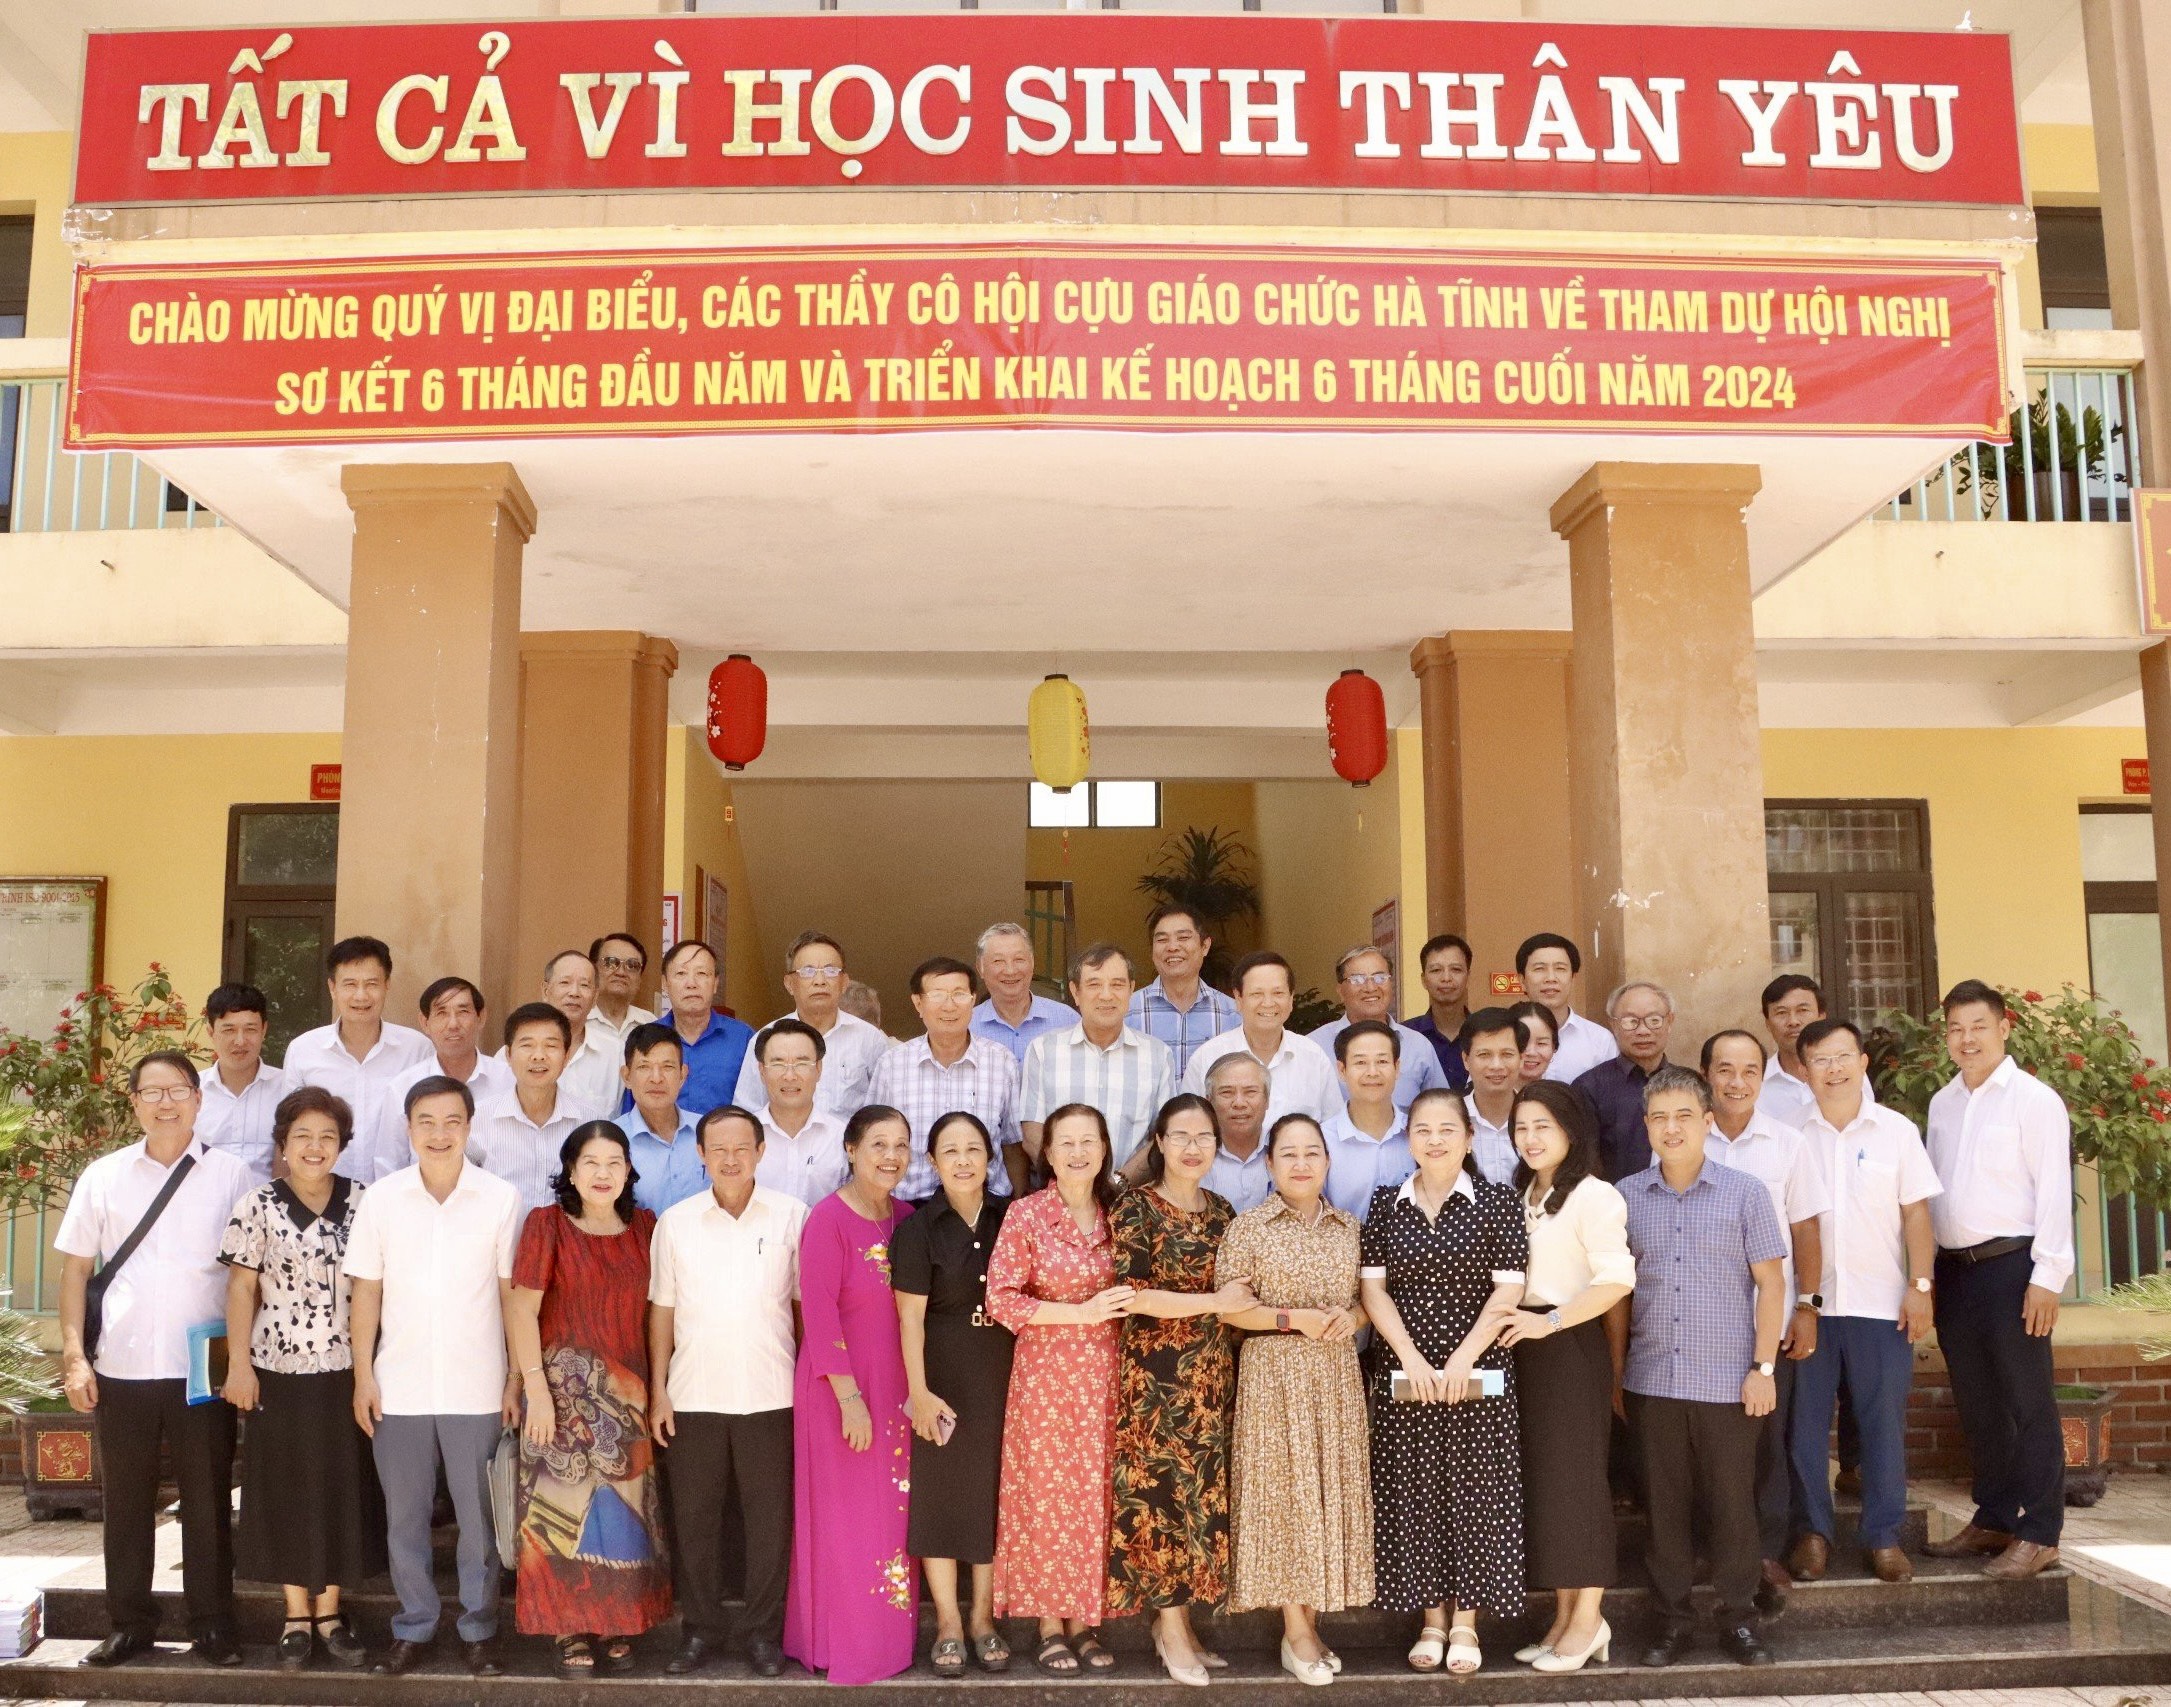 Hội Cựu giáo chức tỉnh Hà Tĩnh tổ chức Hội nghị Sơ kết 6 tháng đầu năm và triển khai kế hoạch 6 tháng cuối năm 2024